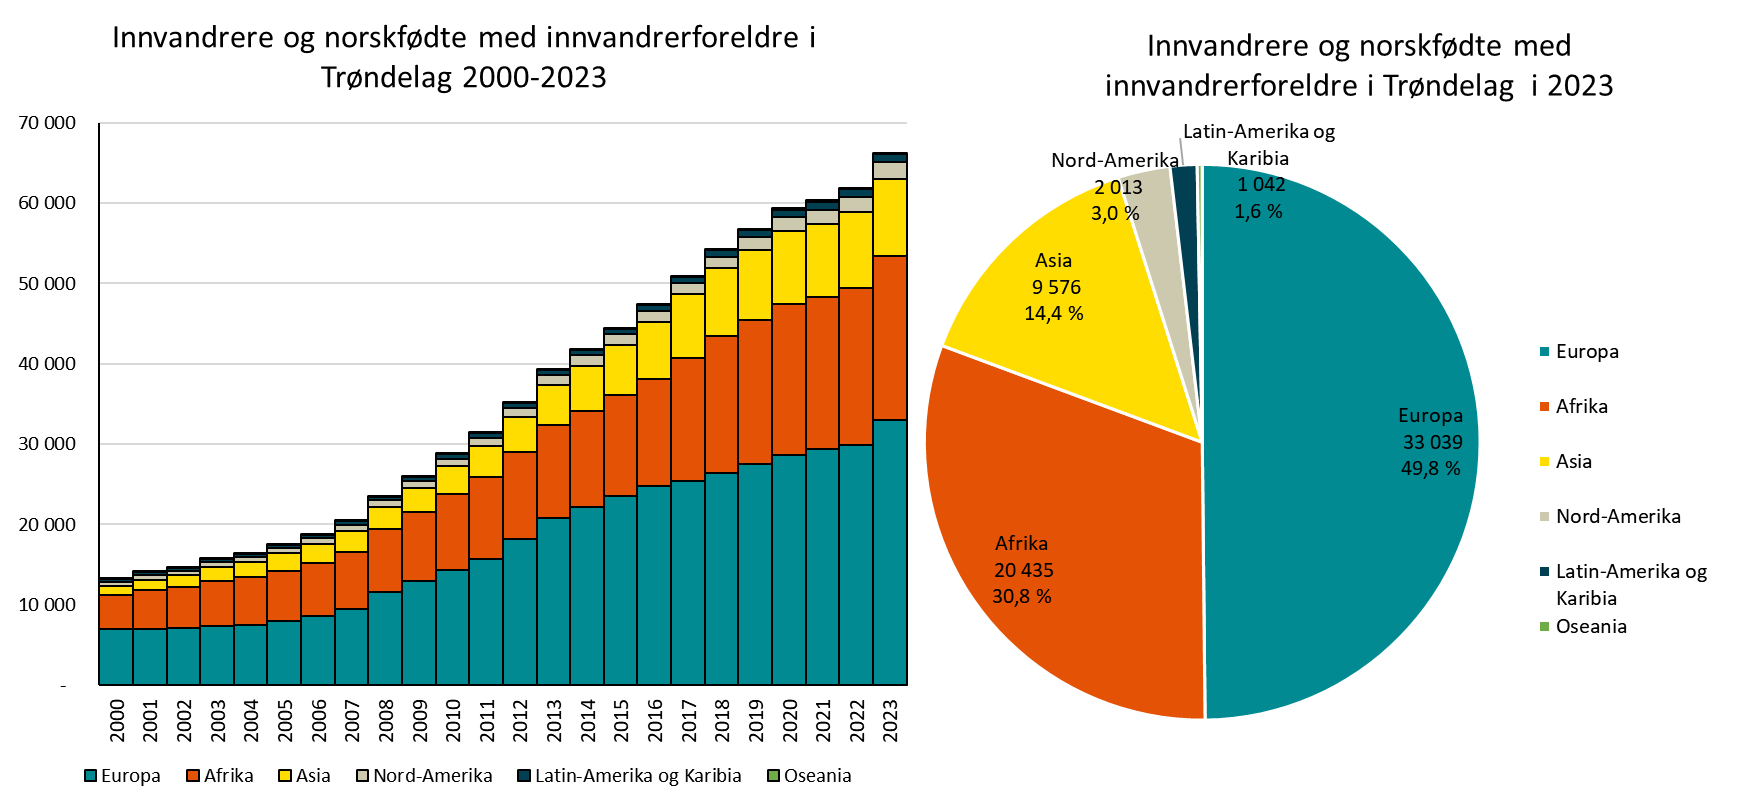 Innvandrere og norskfødte med innvandrerforeldre i Trøndelag 2000-2023